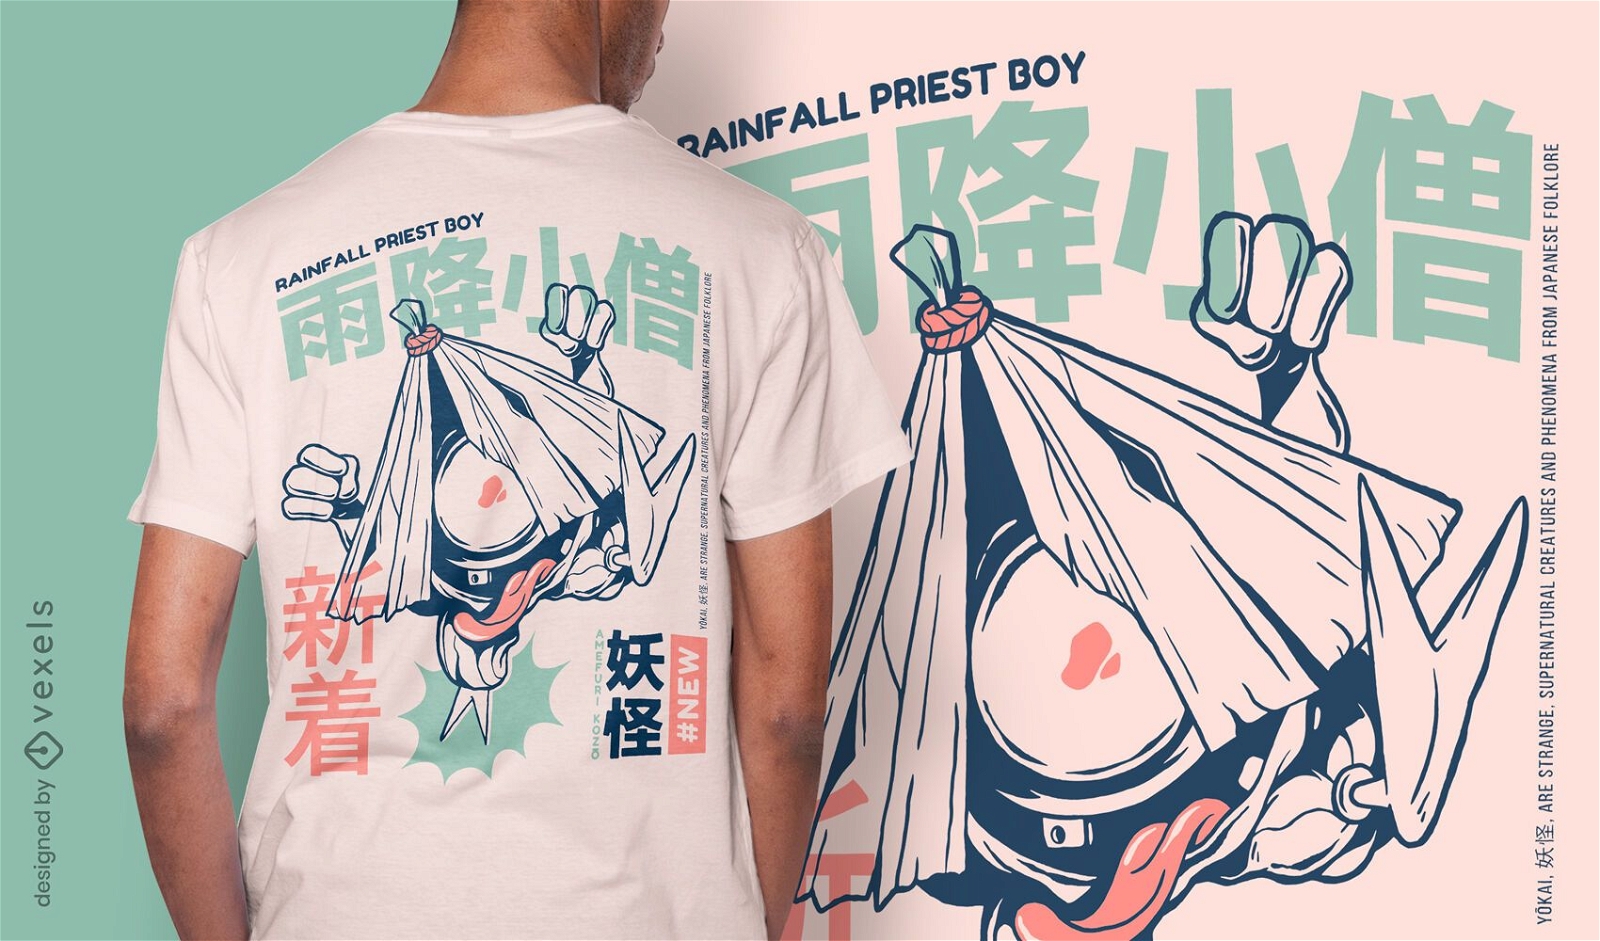 Amefuri-kozo japanese yokai t-shirt design